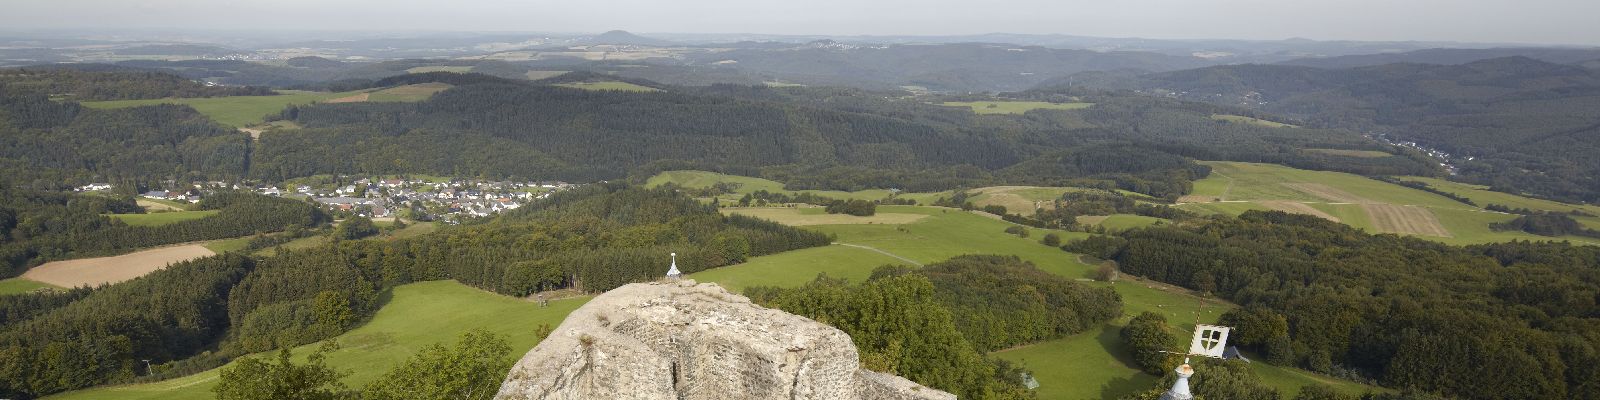 Blick von der Nürburg auf die umgebenden Wälder und Wiesen